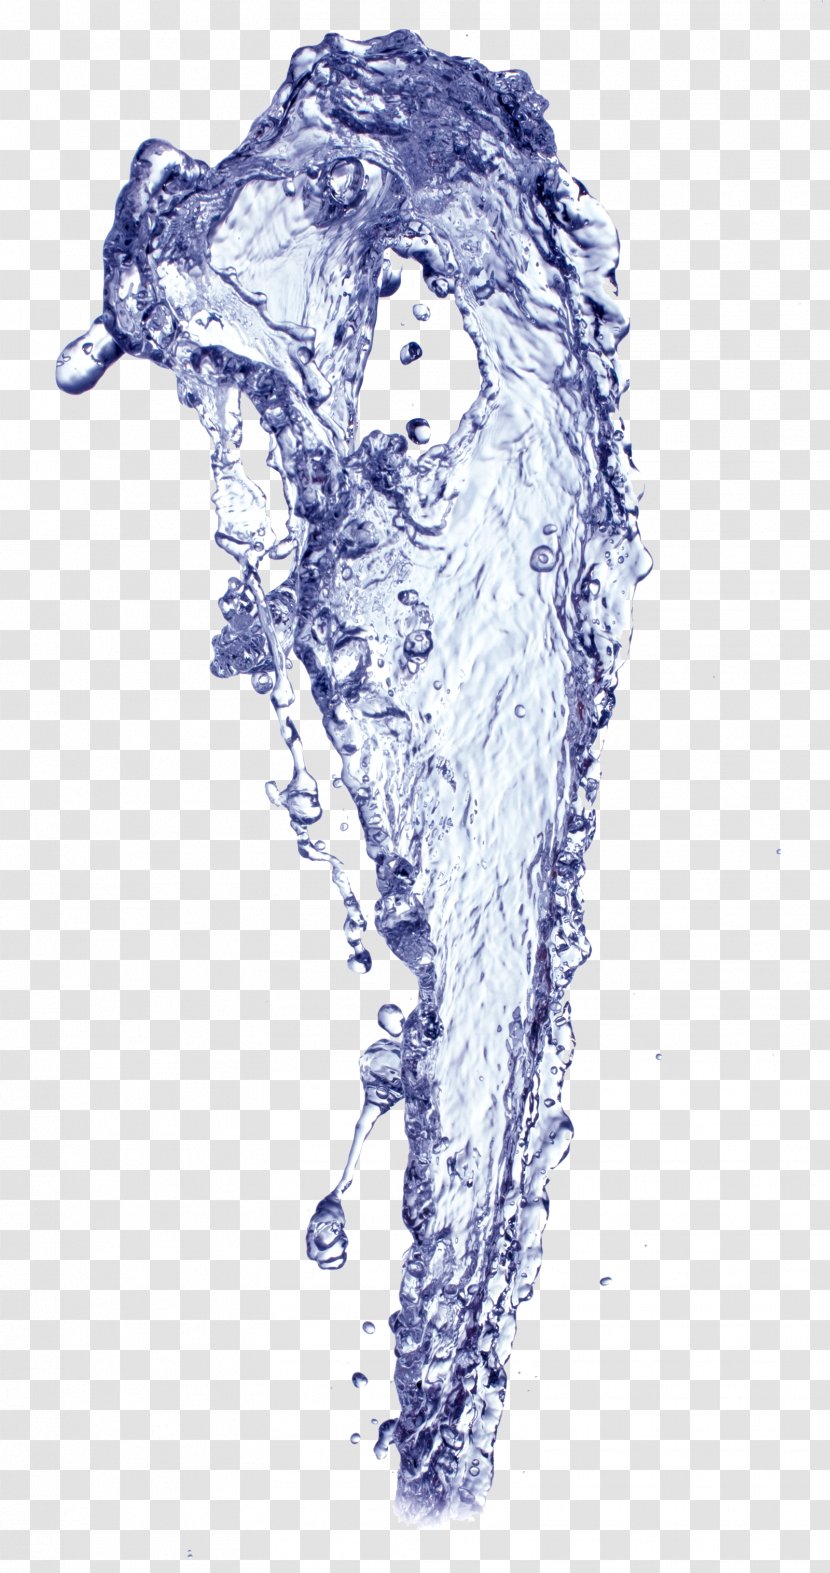 Water Drop Clip Art - Head - Droplets Transparent PNG